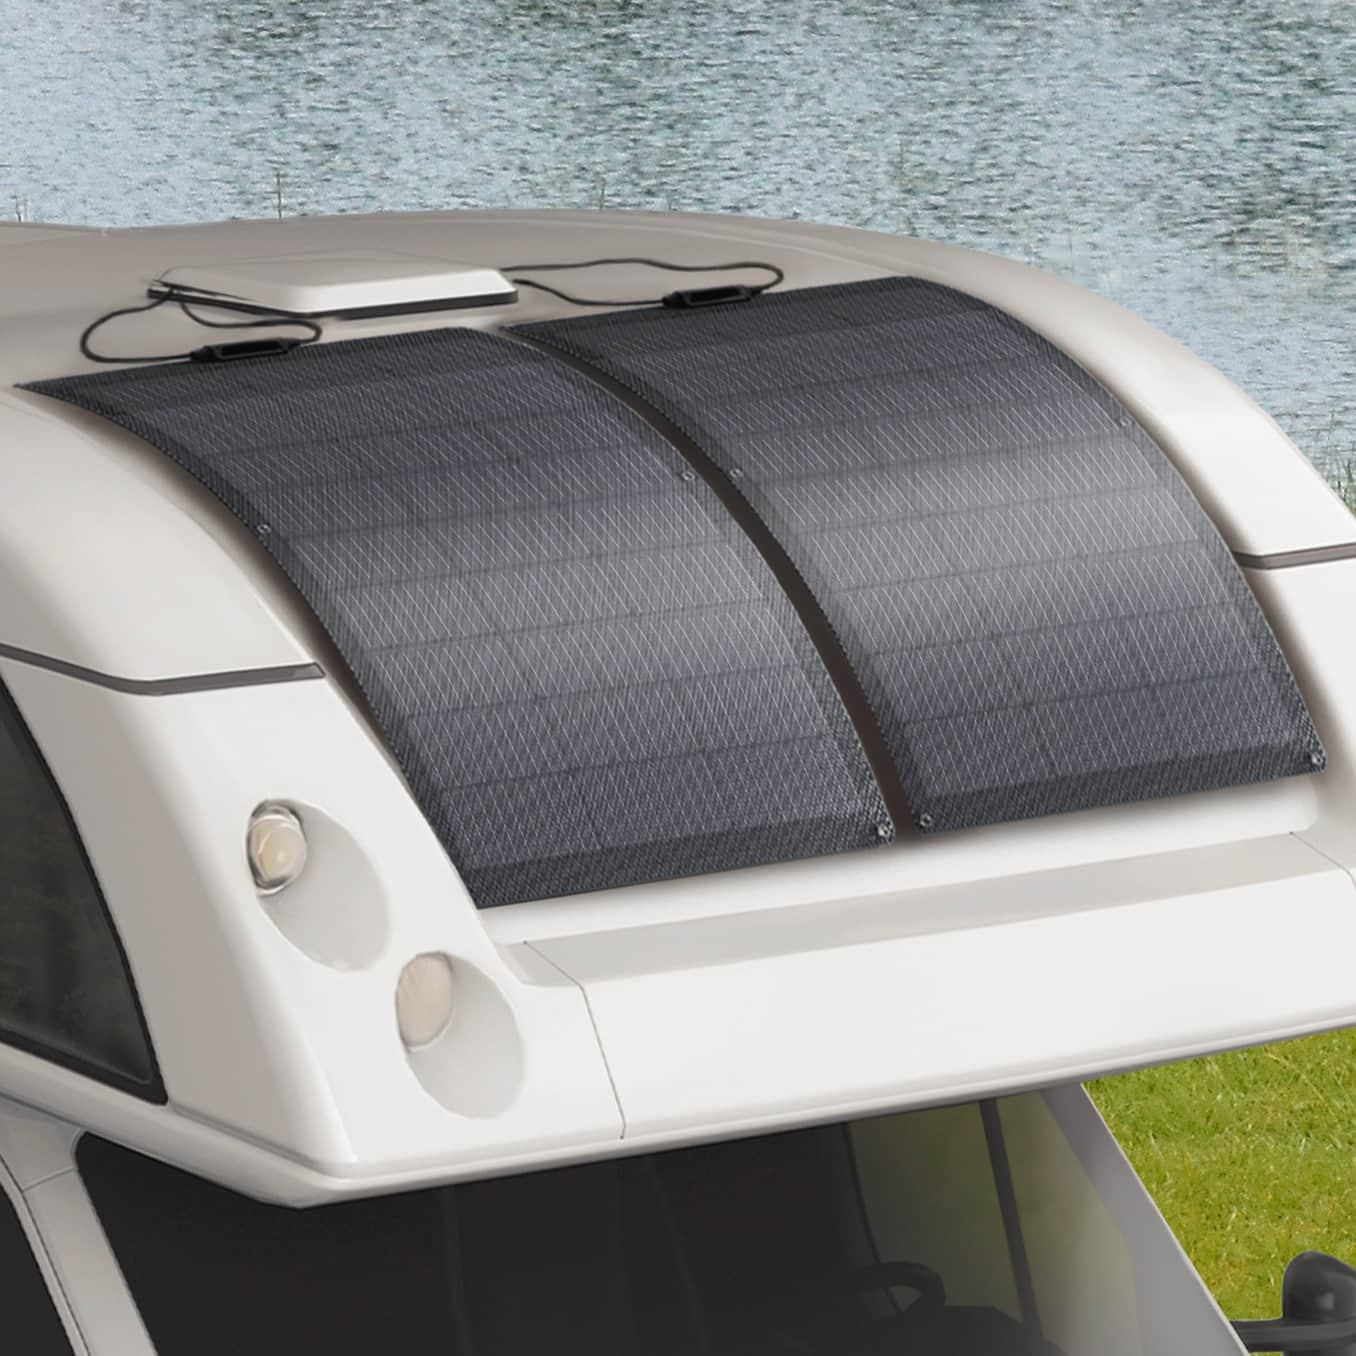 Two EcoFlow 100W Flexible Solar Panel Mounted On RV